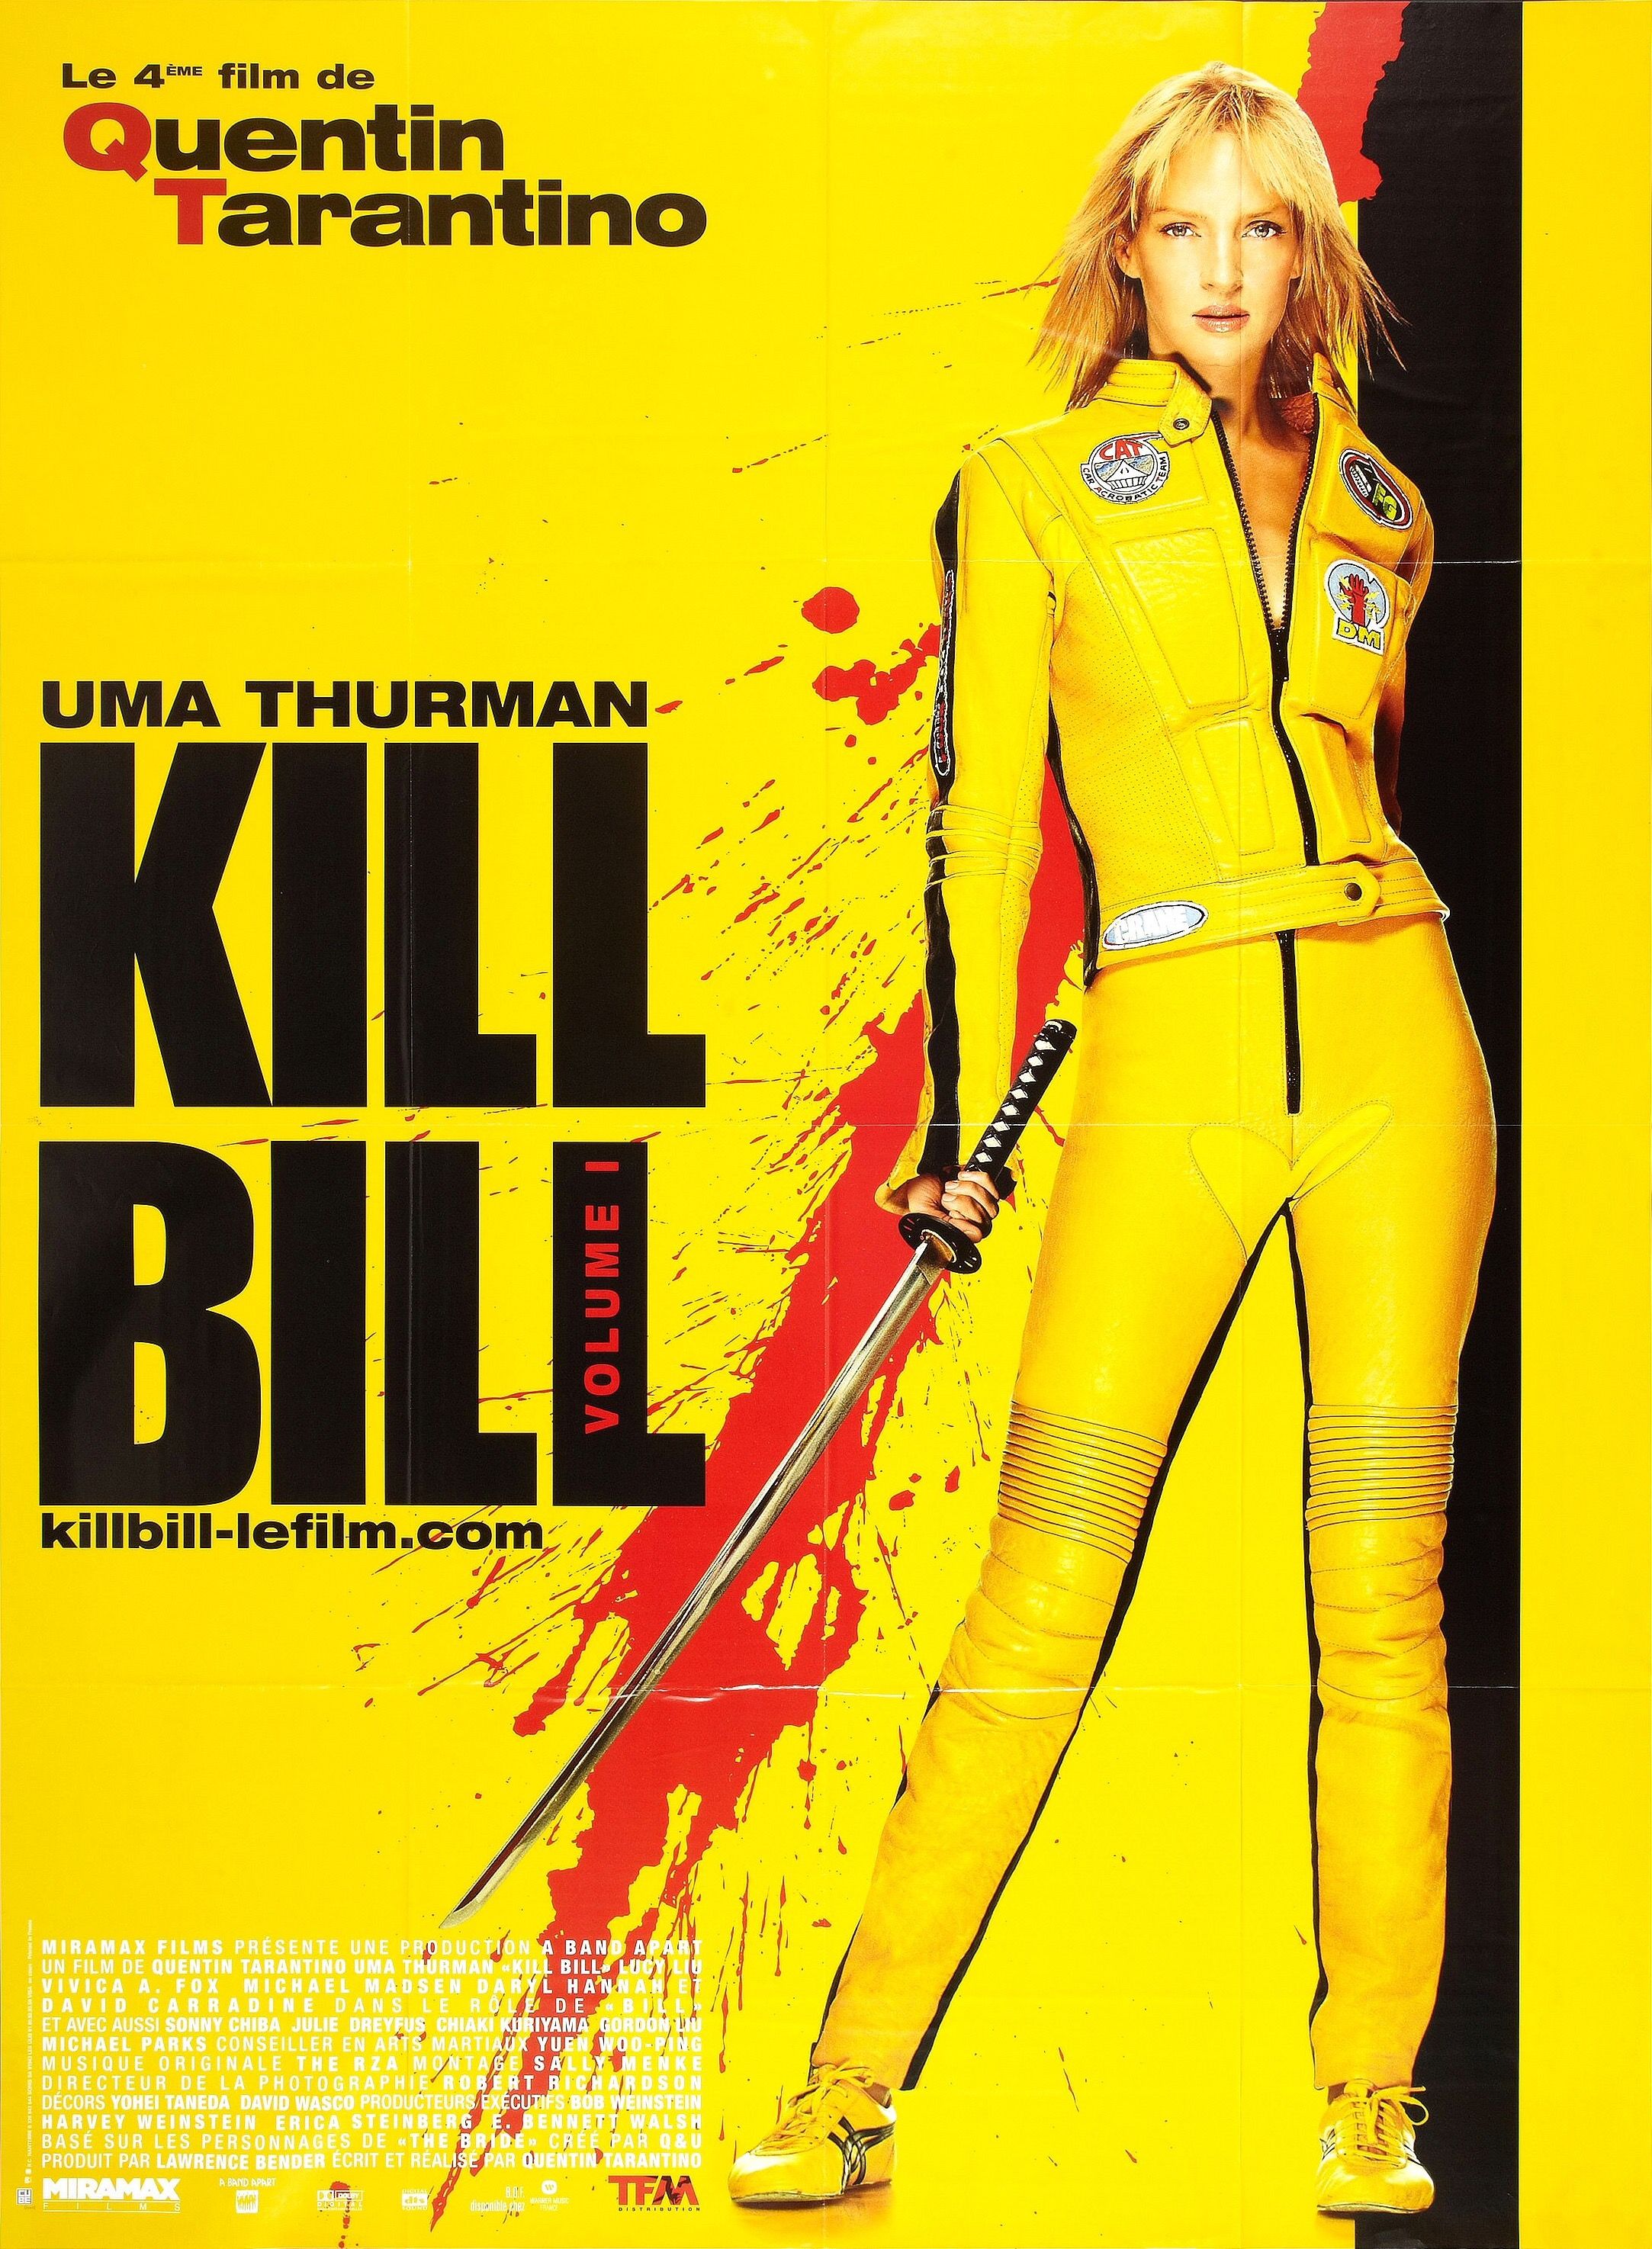 kill bill volume 1 movie